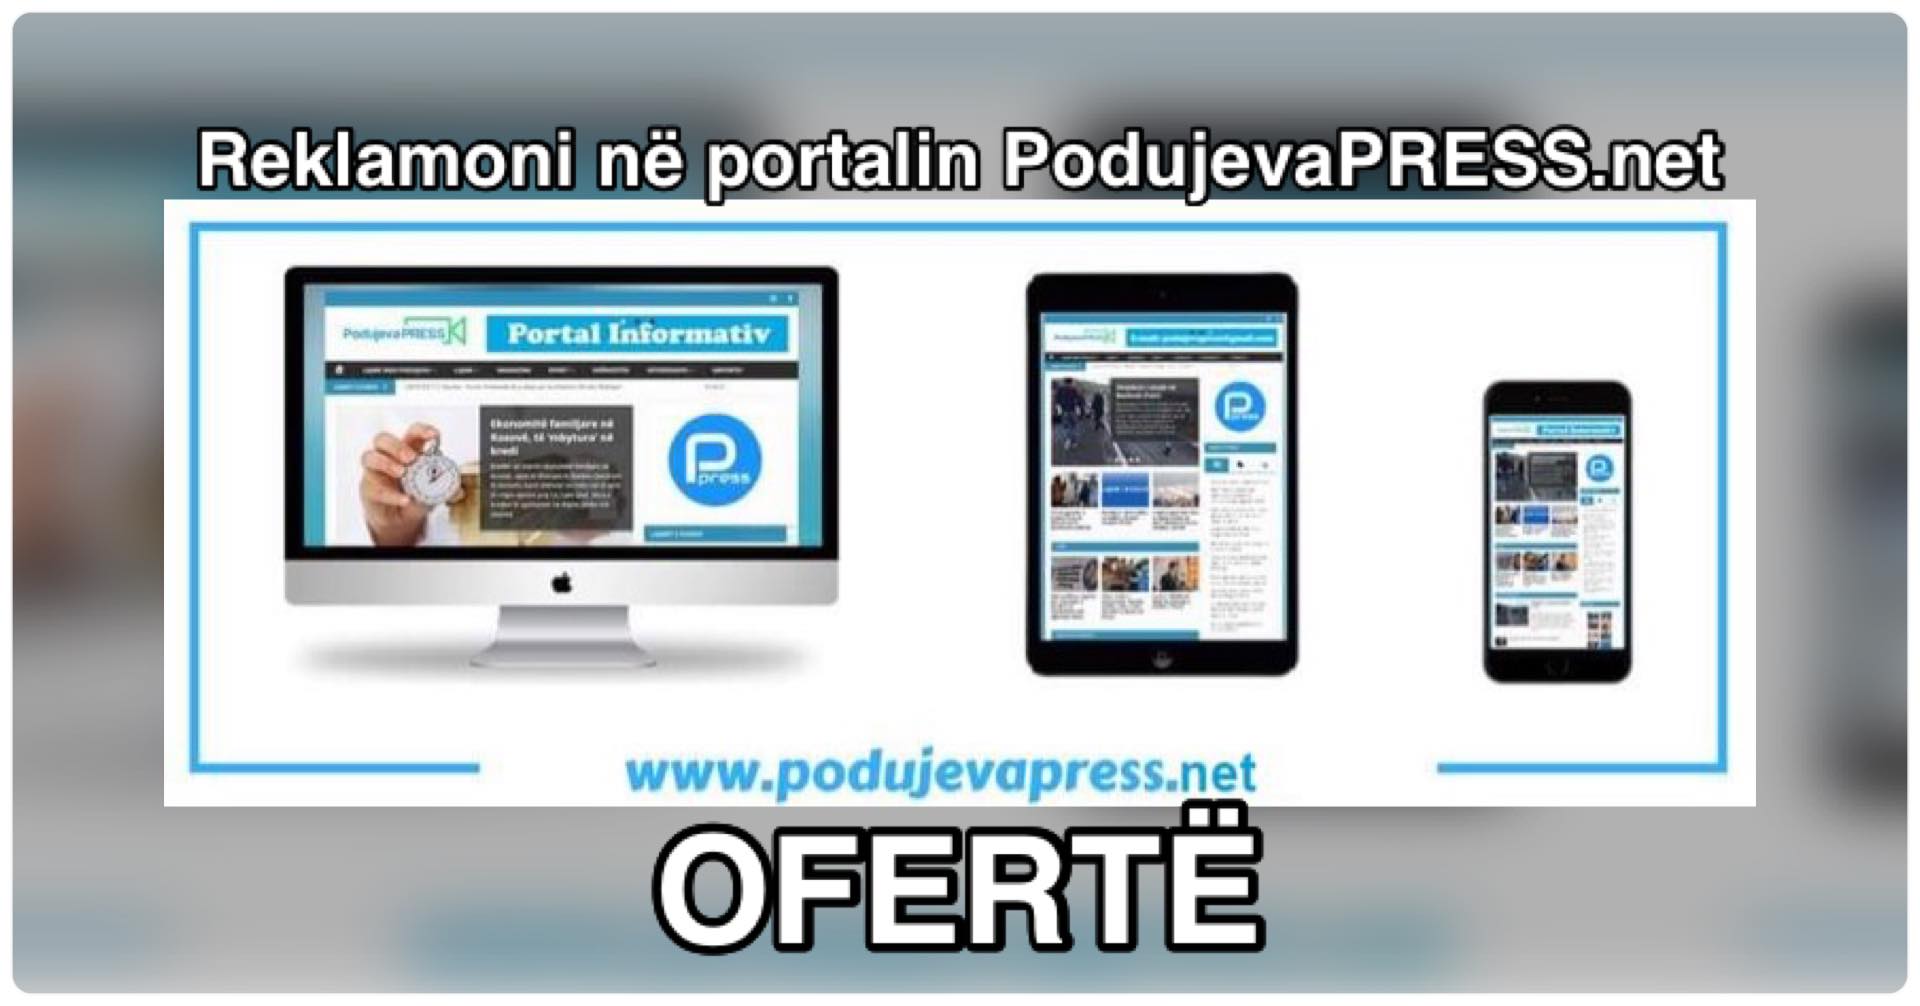  PodujevaPRESS.net: Oferta për reklama për të gjitha subjektet politike dhe kandidatët për asamble komunale